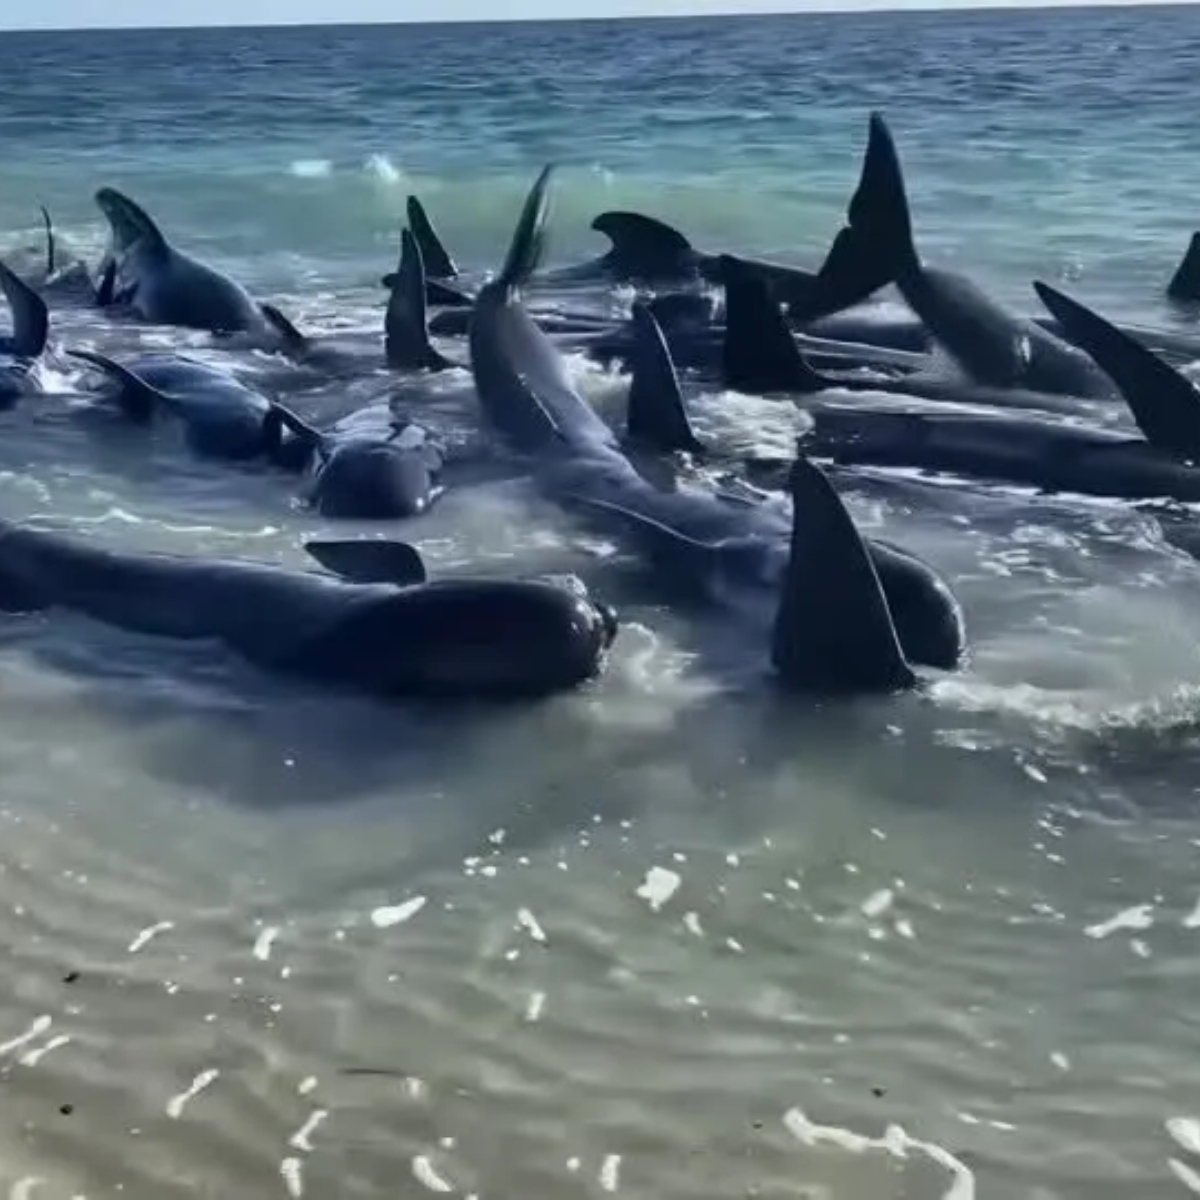  Mais de 100 baleias ficam encalhadas em praia; 26 morreram 